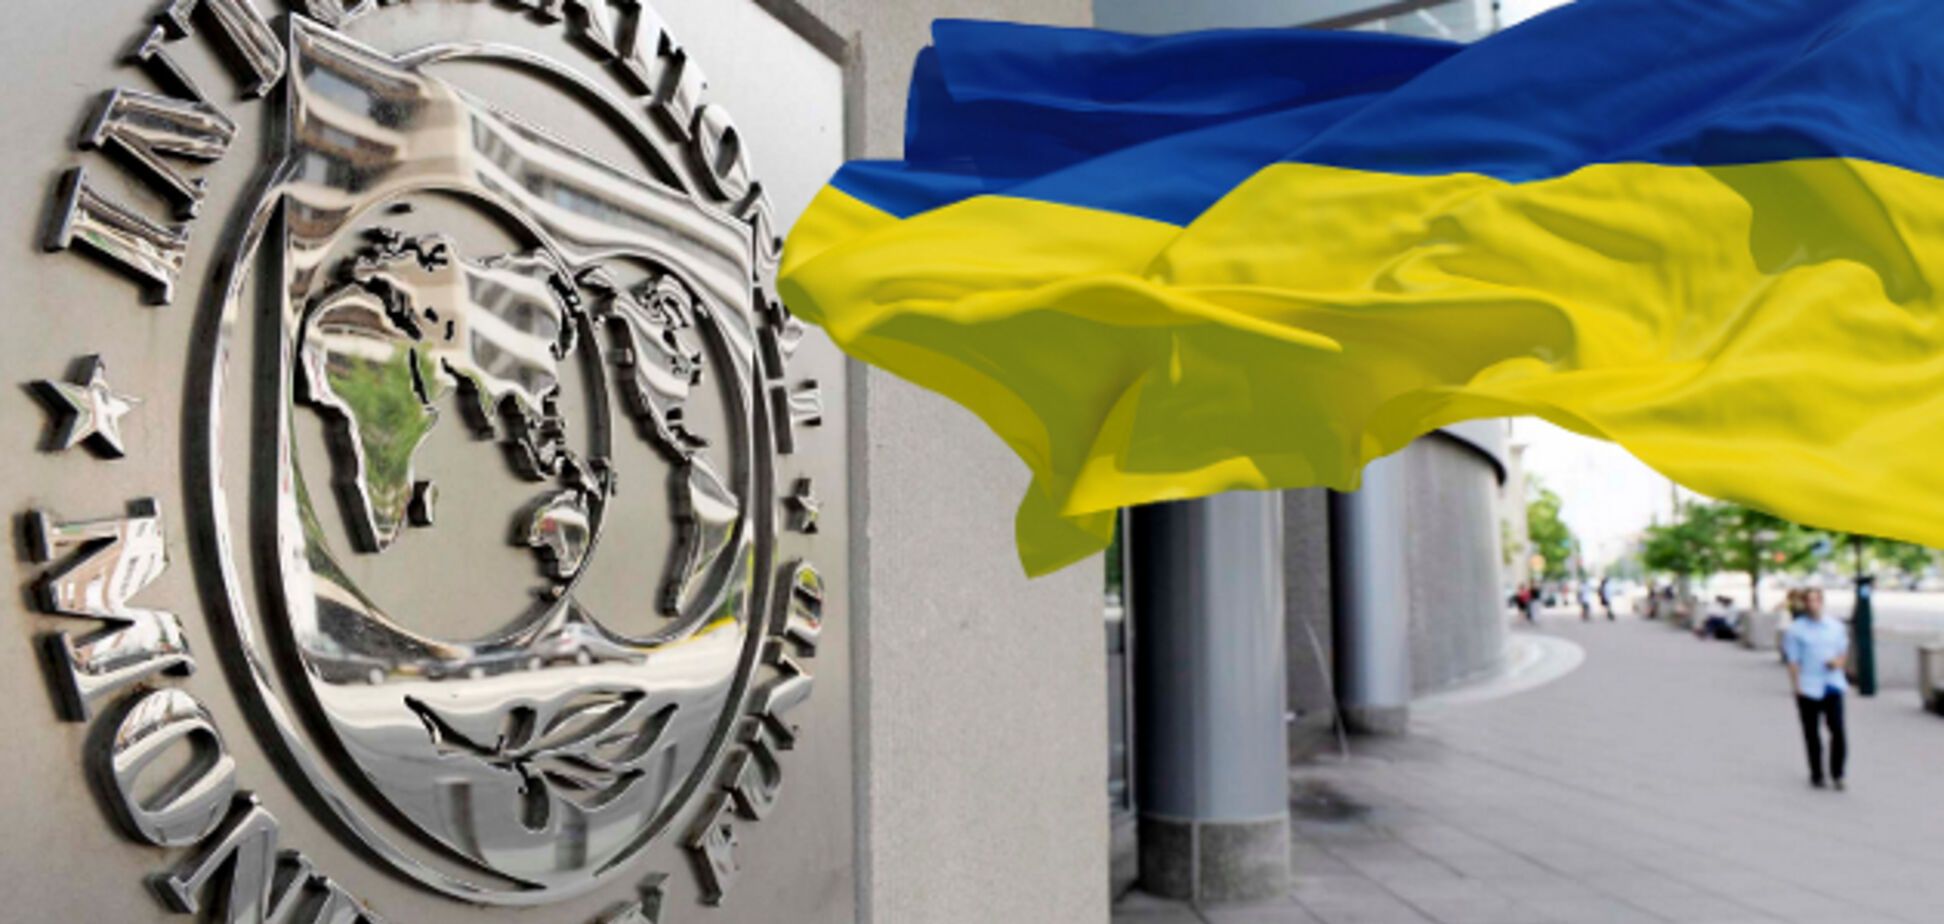 Останній платіж: стала відома сума, перерахована Україною МВФ у 2017 році